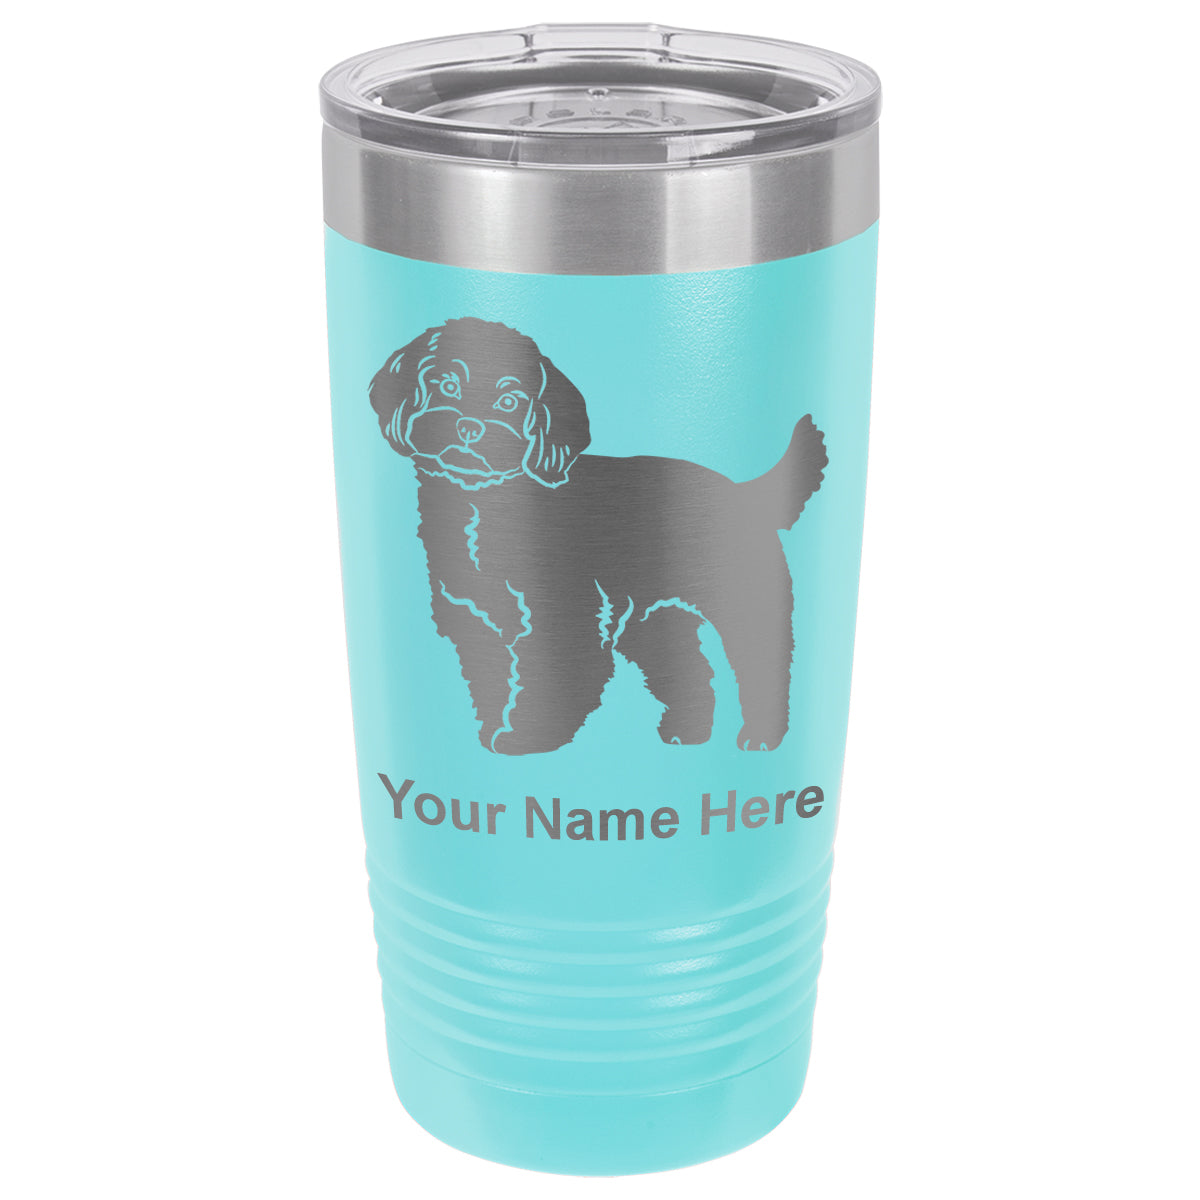 20oz Vacuum Insulated Tumbler Mug, Maltese Dog, Personalized Engraving Included